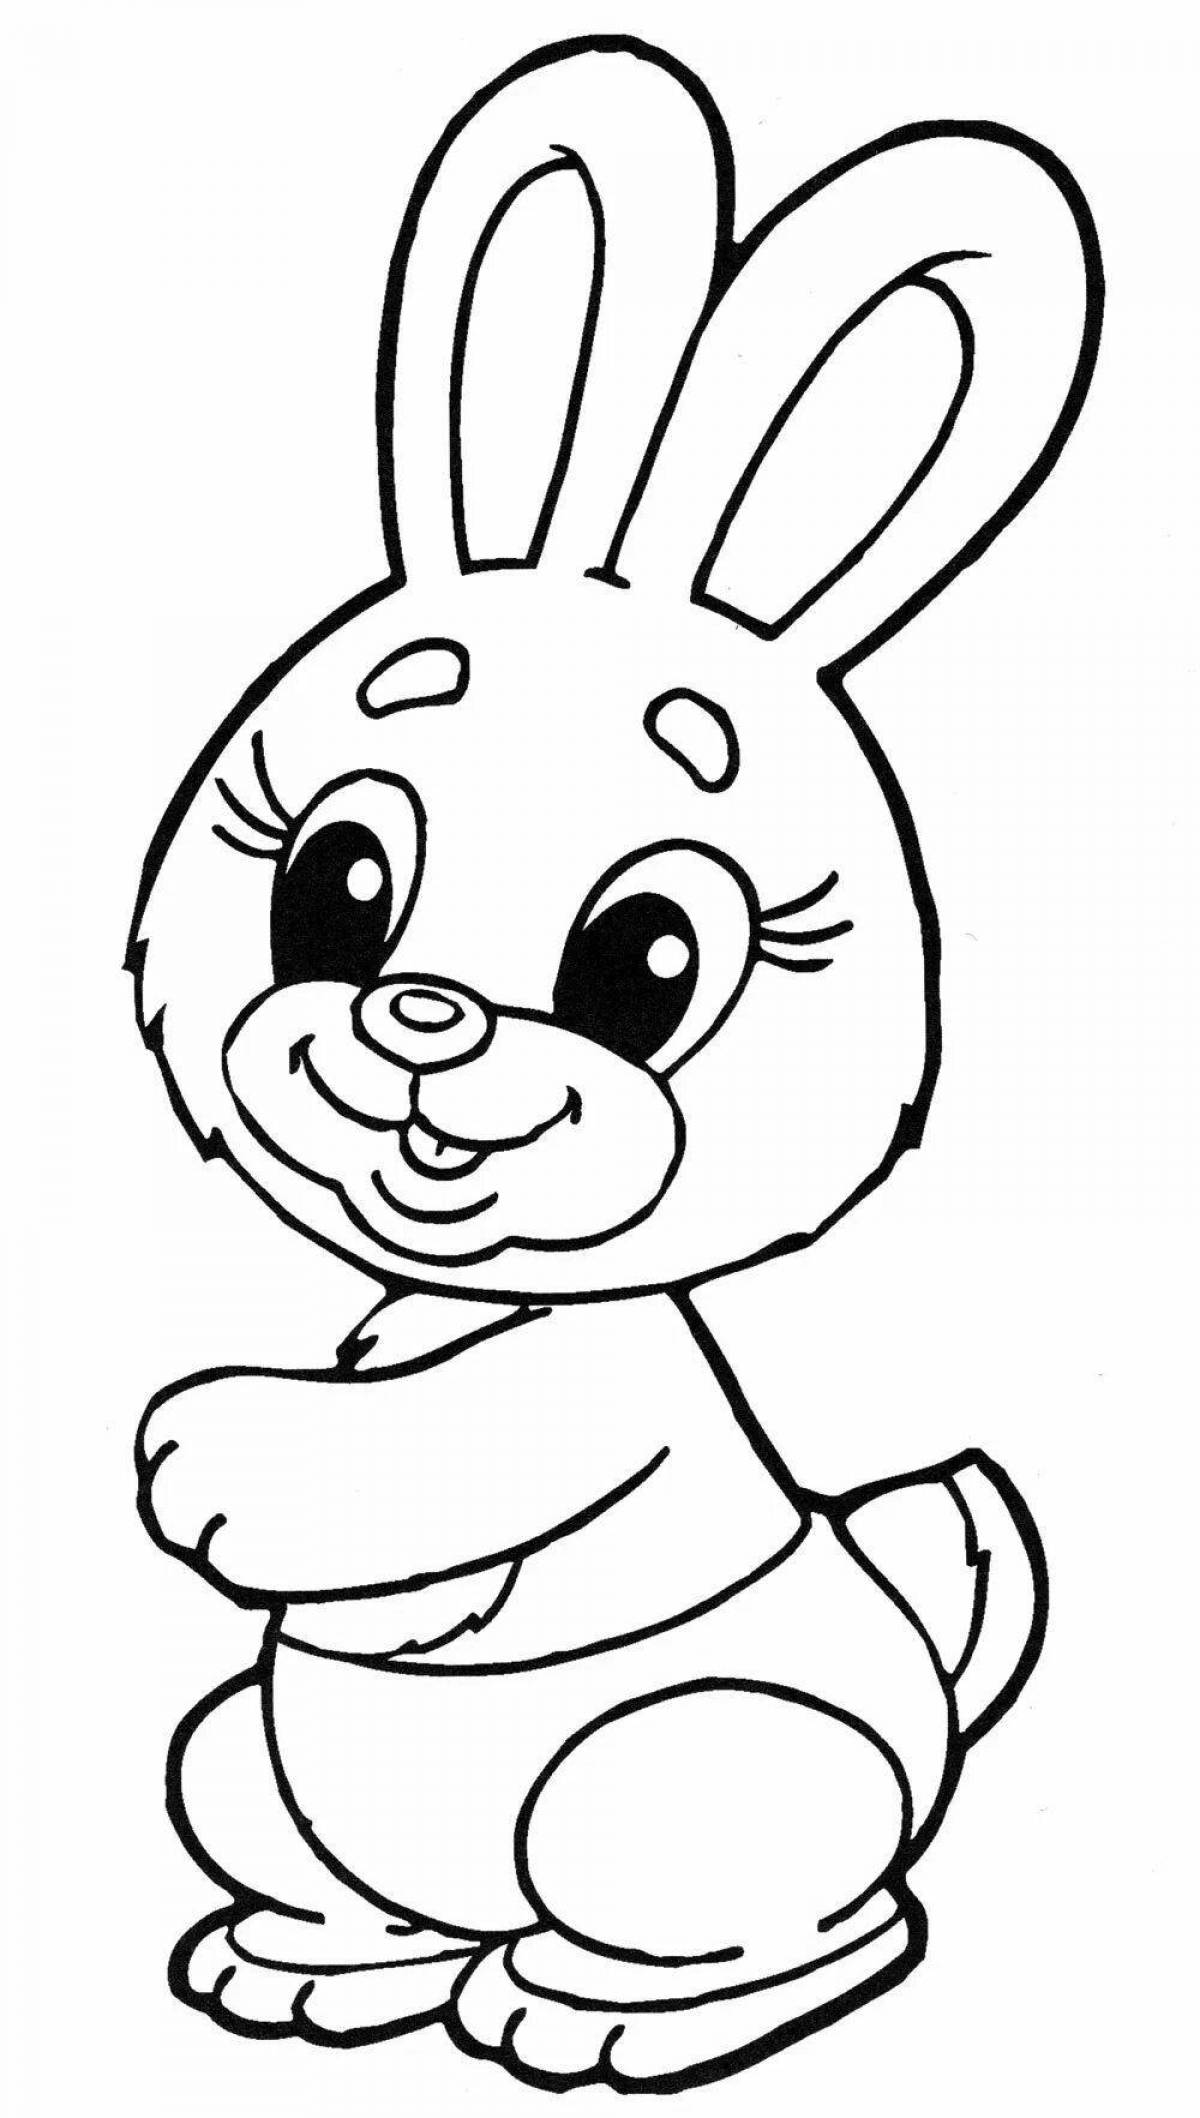 Милая раскраска кролик для детей 2 лет